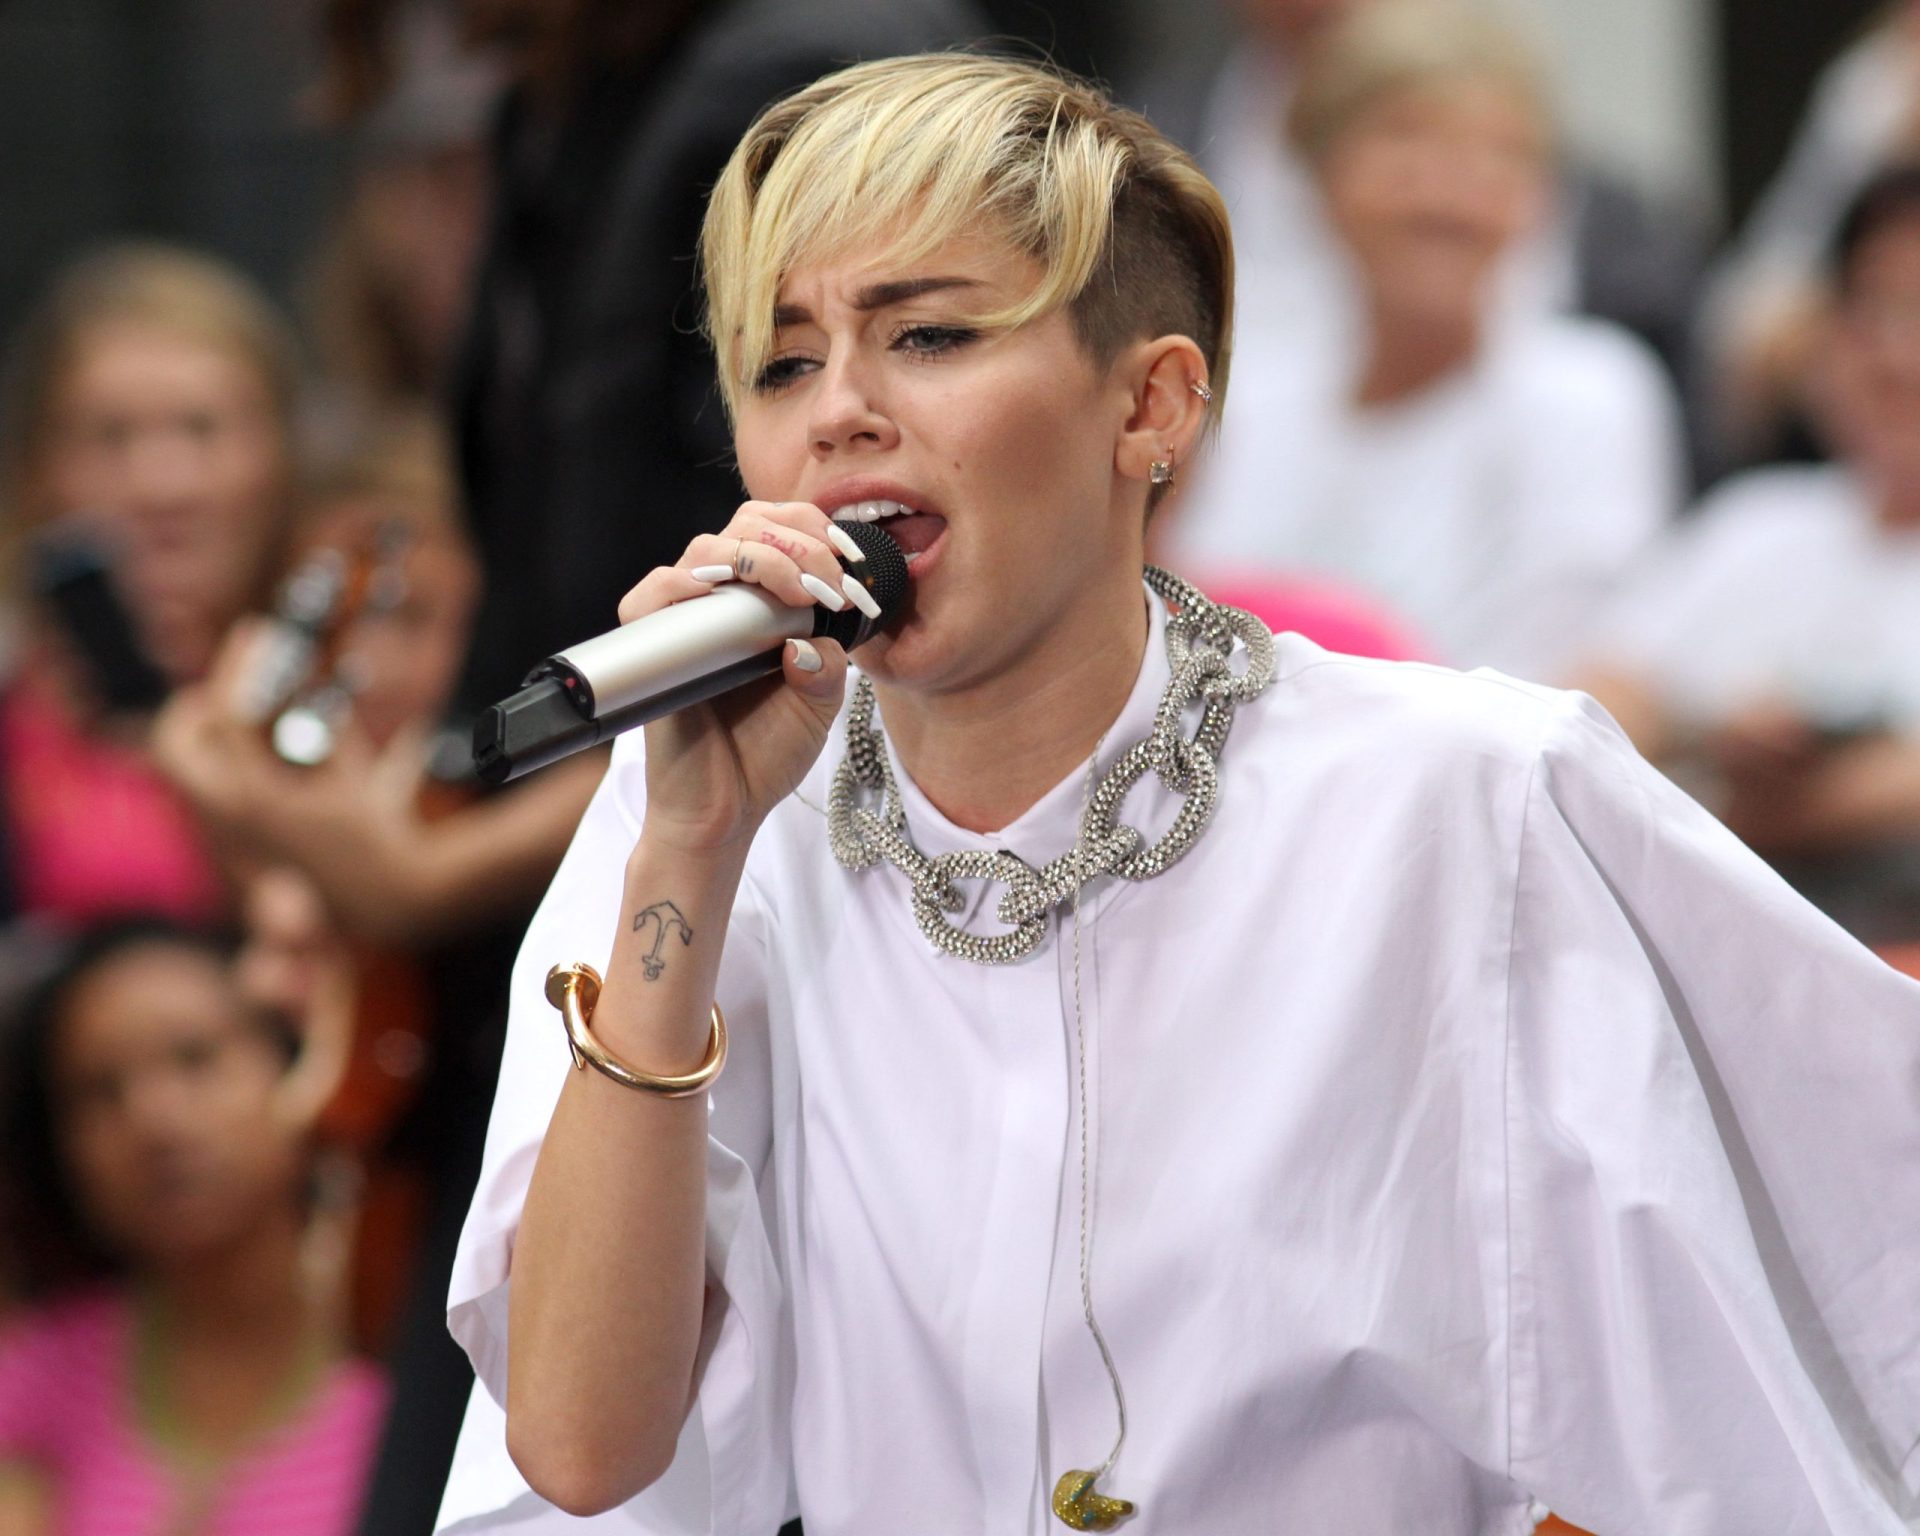 Miley Cyrus voltou a despir-se. E os fãs ficaram preocupados com o que viram